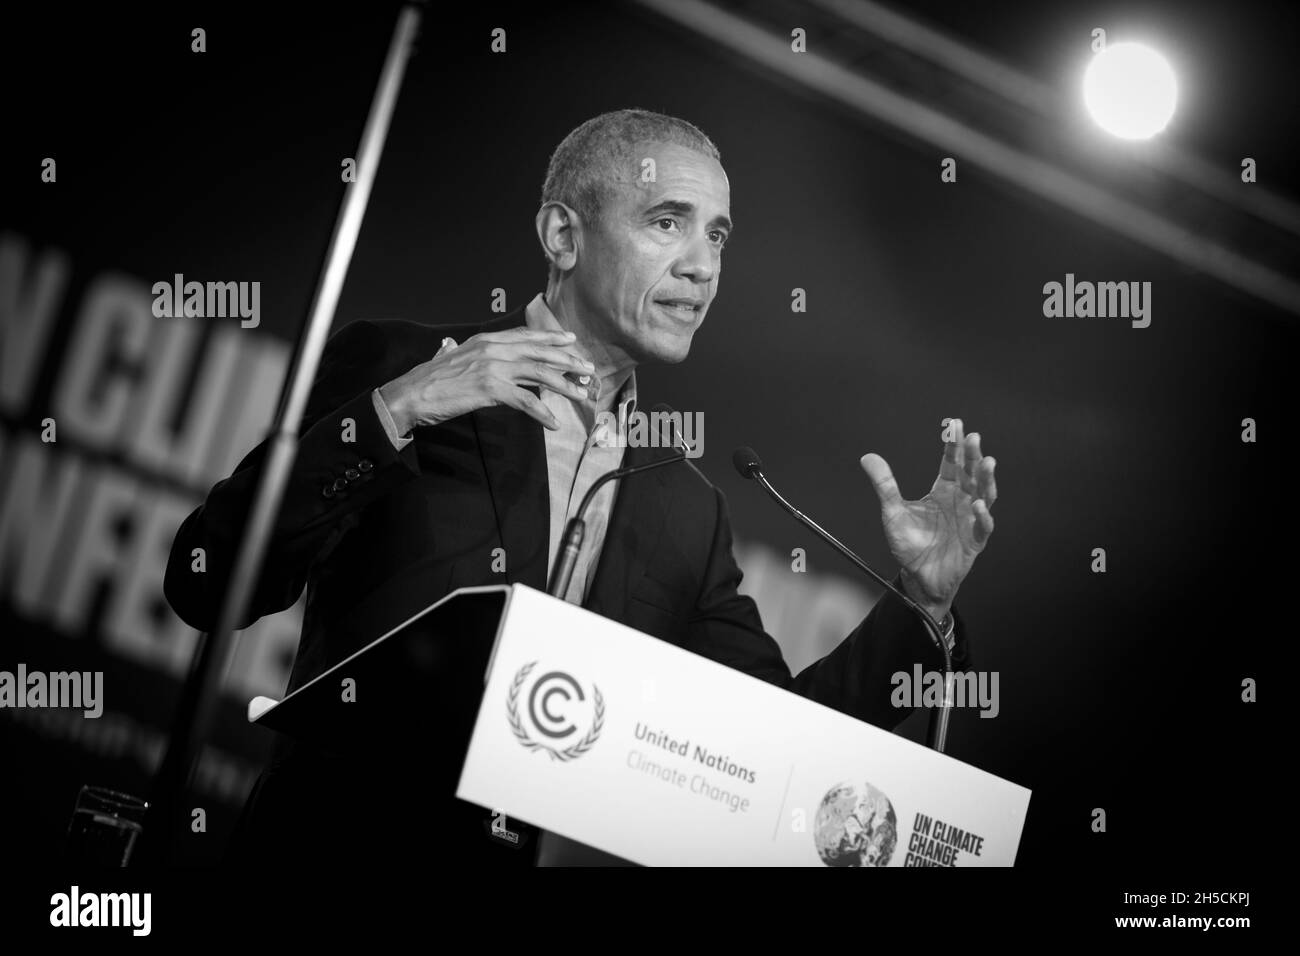 Glasgow, Schottland, Großbritannien. Barack Obama, ehemaliger Präsident der Vereinigten Staaten von Amerika, spricht auf der 26. UN-Klimakonferenz, bekannt als COP26, in Glasgow, Schottland, Großbritannien, Am 8. November 2021. Foto:Jeremy Sutton-Hibbert/Alamy Live News. Stockfoto